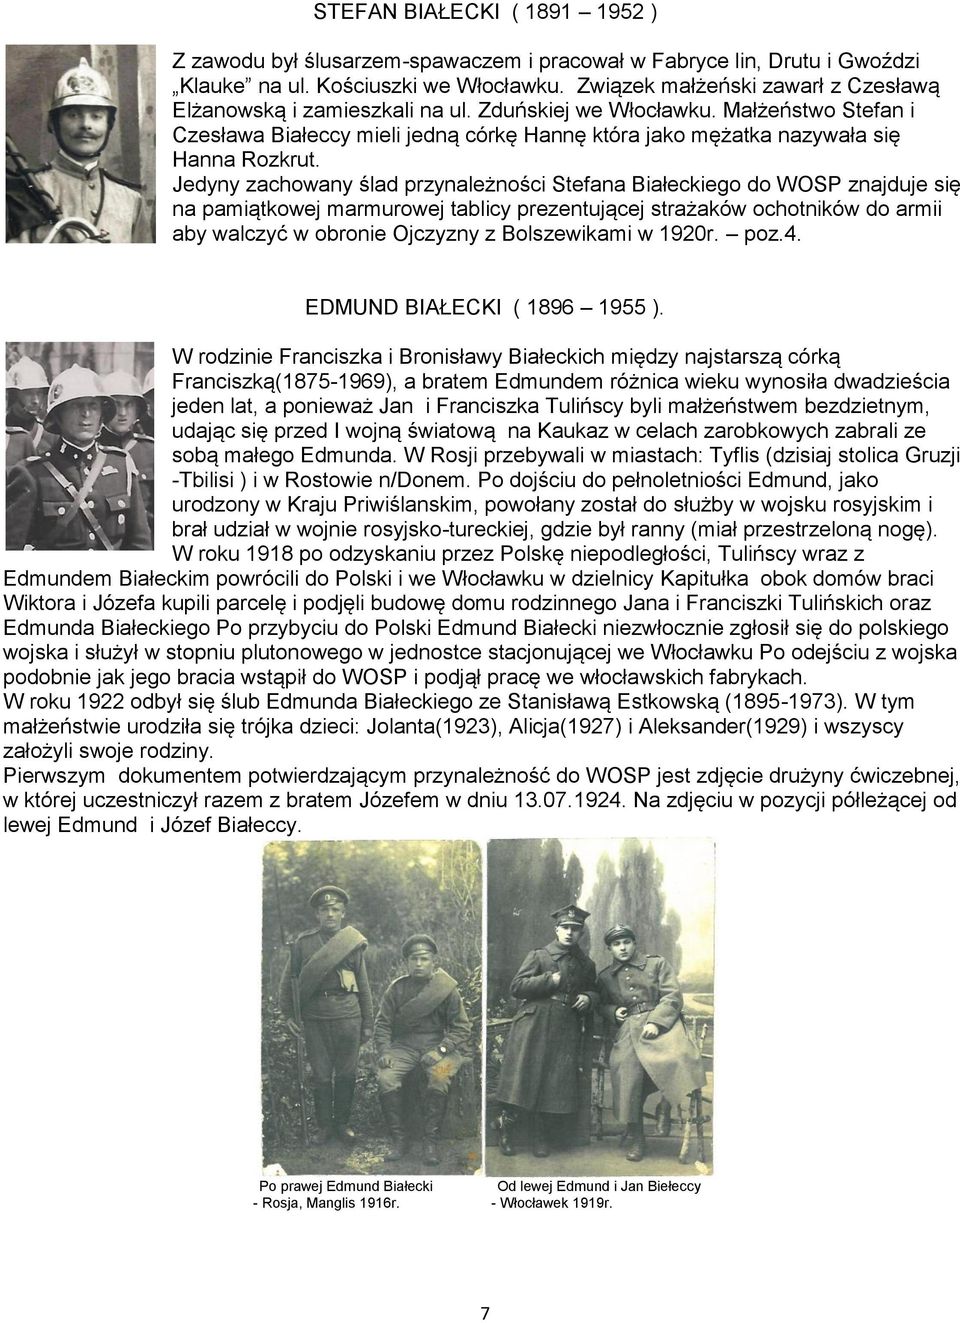 Jedyny zachowany ślad przynależności Stefana Białeckiego do WOSP znajduje się na pamiątkowej marmurowej tablicy prezentującej strażaków ochotników do armii aby walczyć w obronie Ojczyzny z